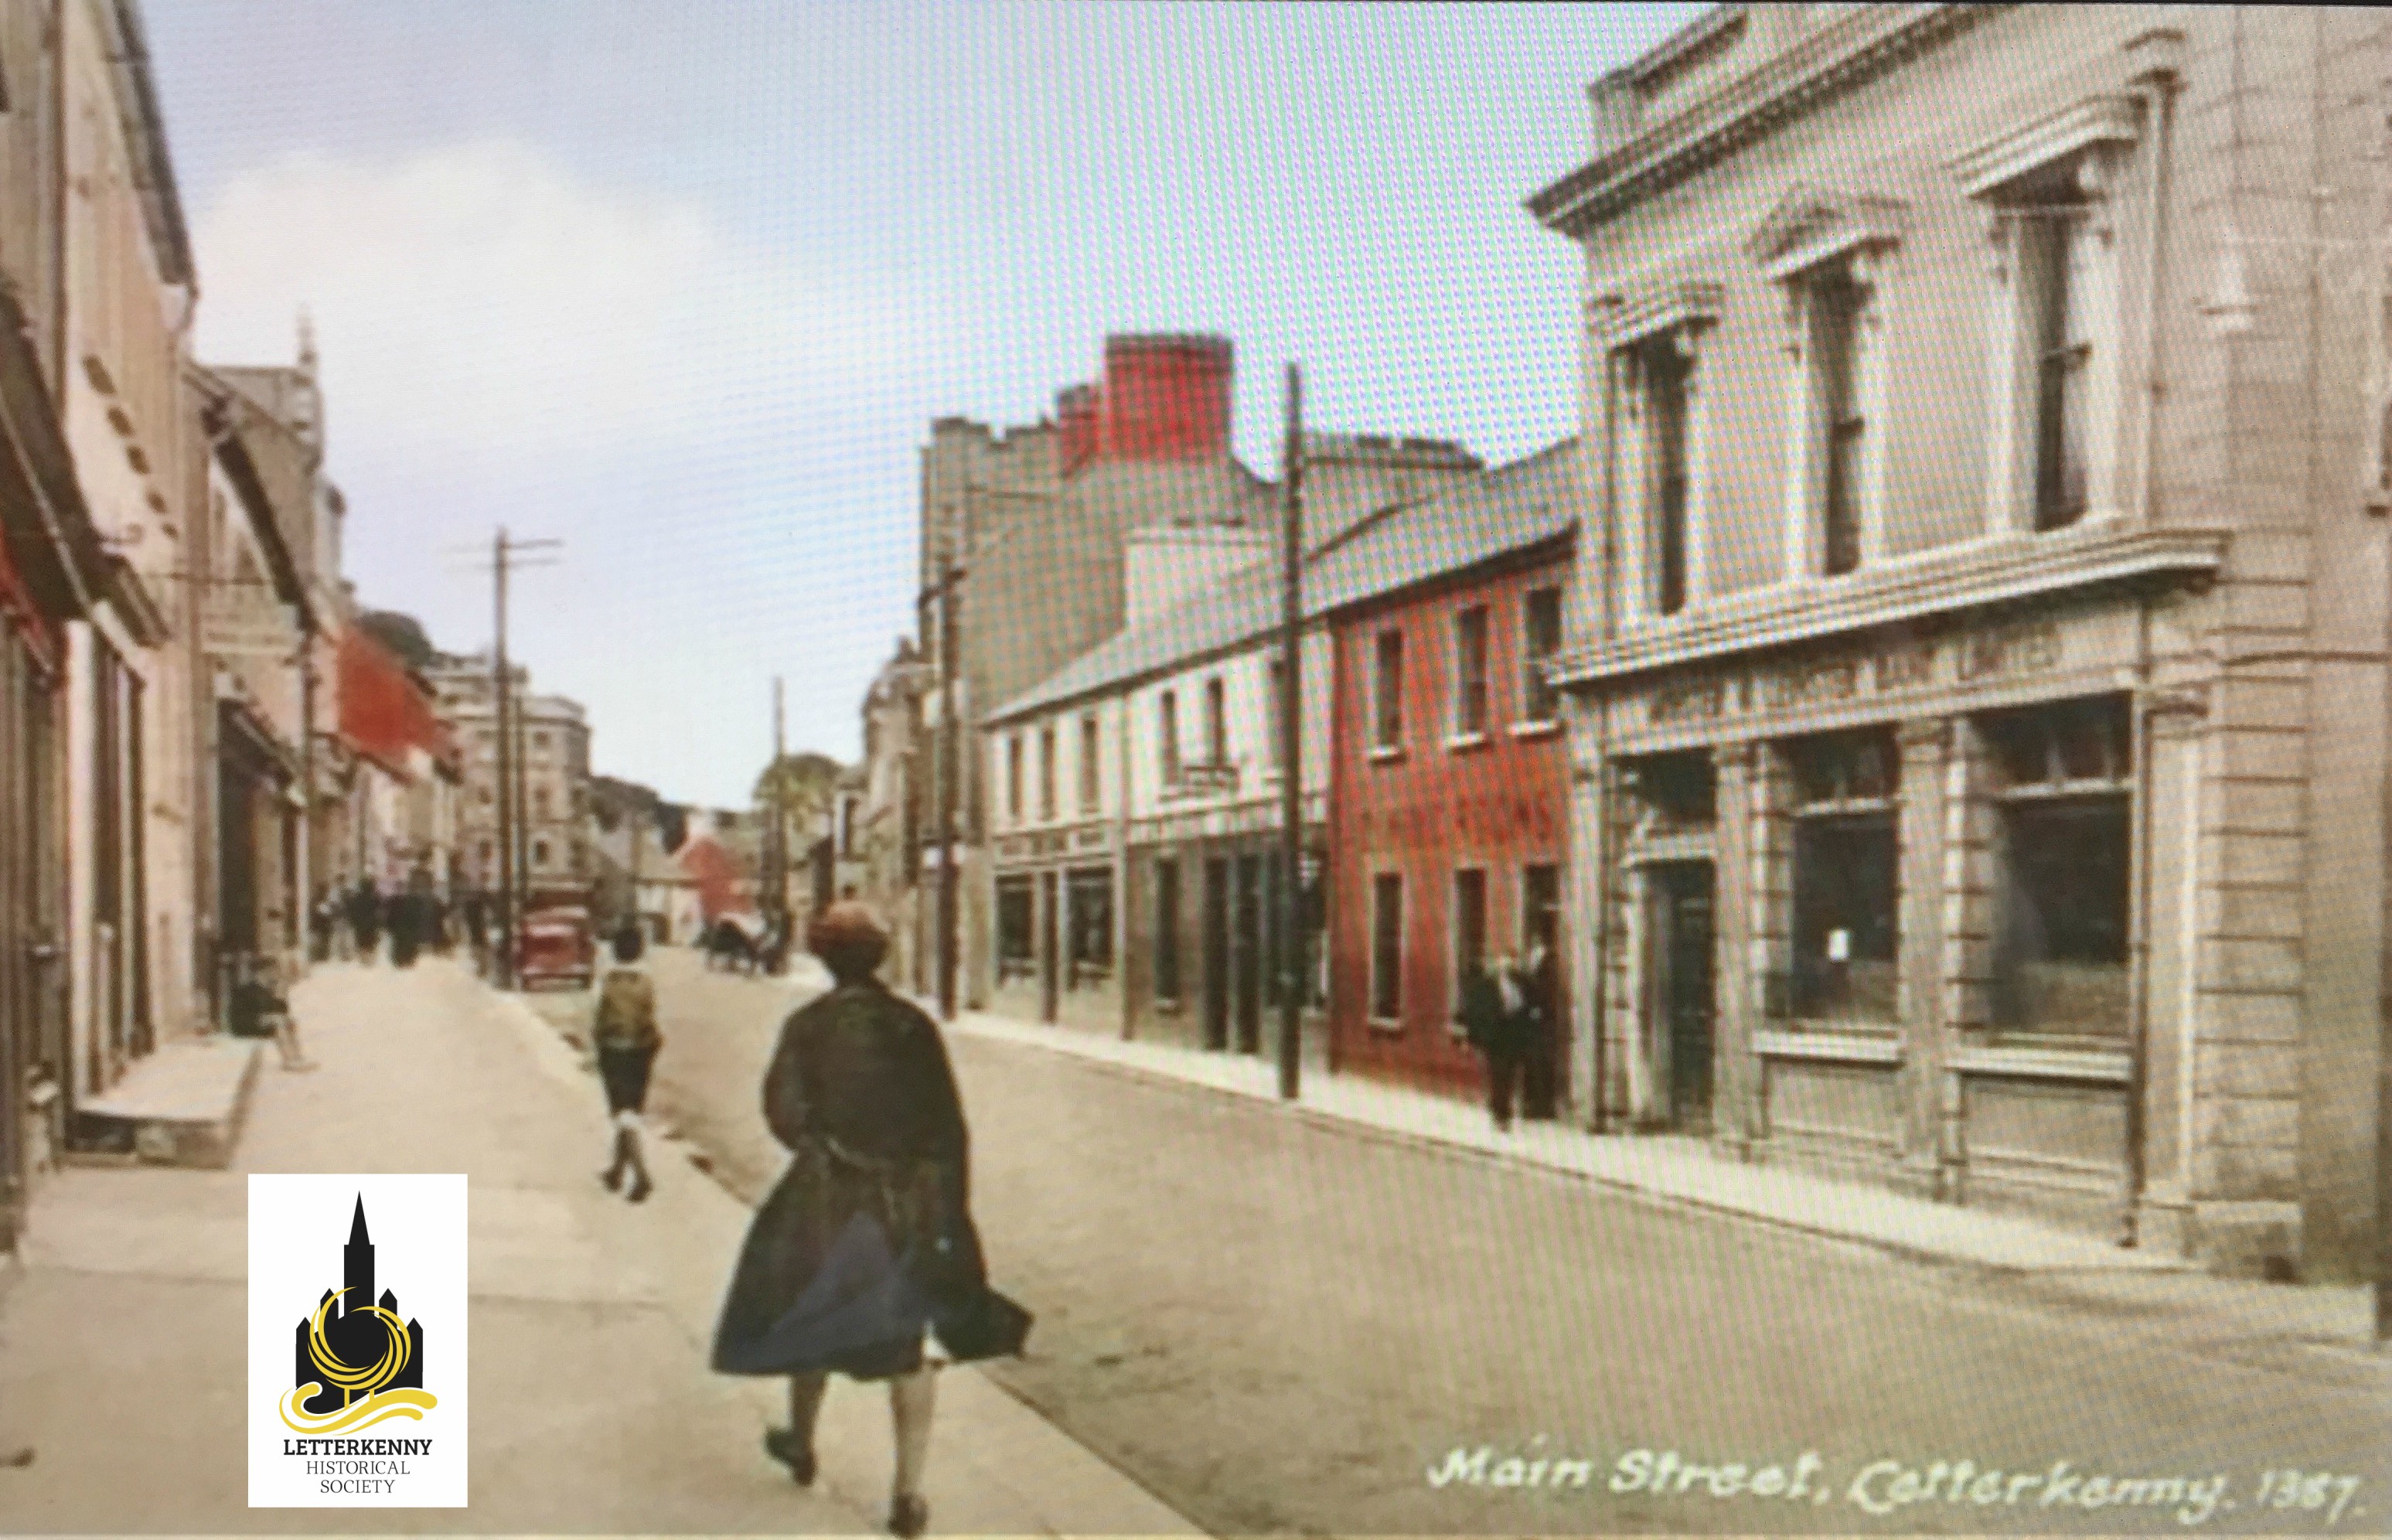 Main Street, mid 20th century